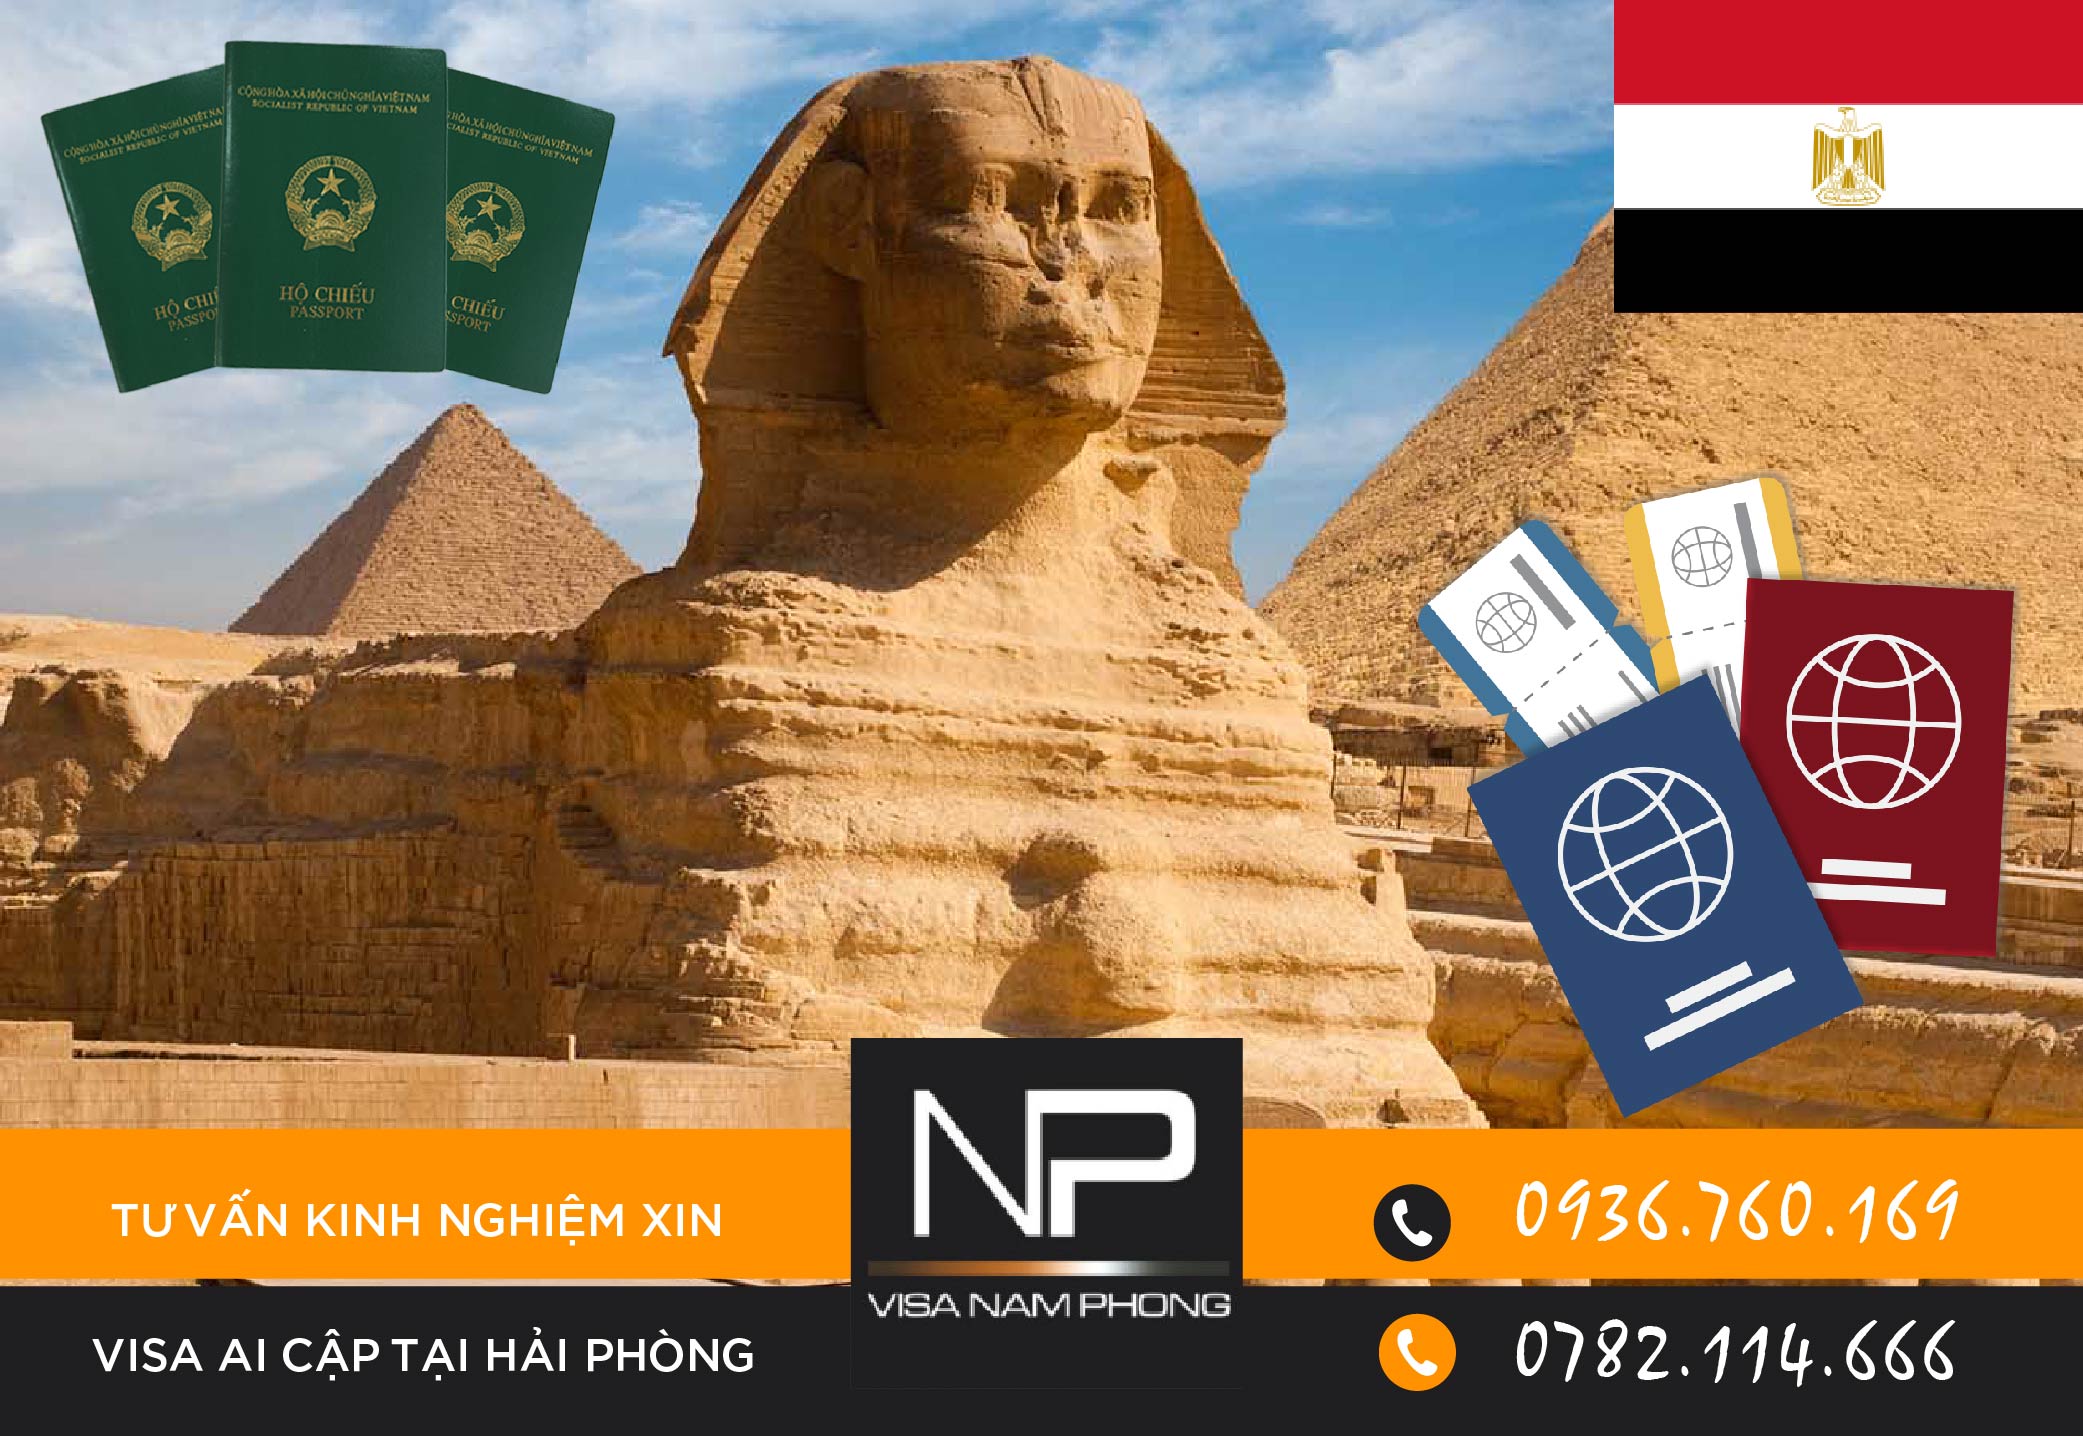 Tư vấn kinh nghiệm xin visa Ai Cập tại Hải Phòng